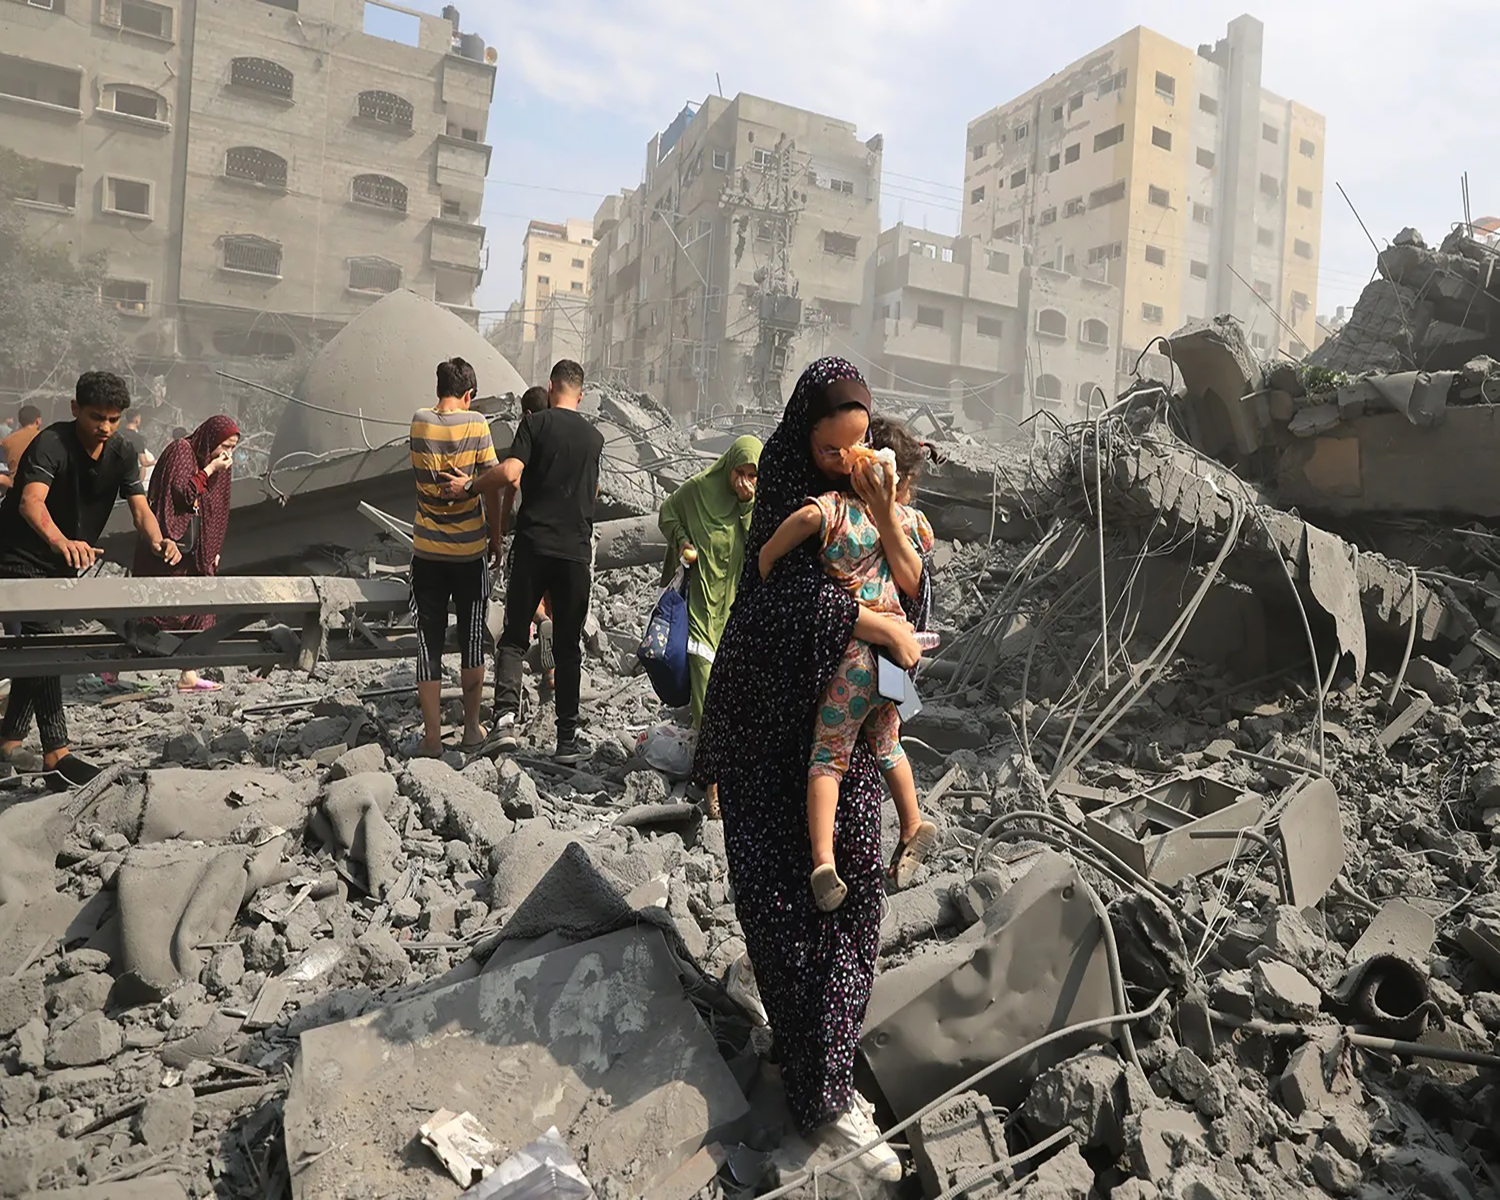 الأمين العام للاتحاد يوجه نداء عاجلا لوقف المجازر البشعة والعدوان الآثم على سكان غزة